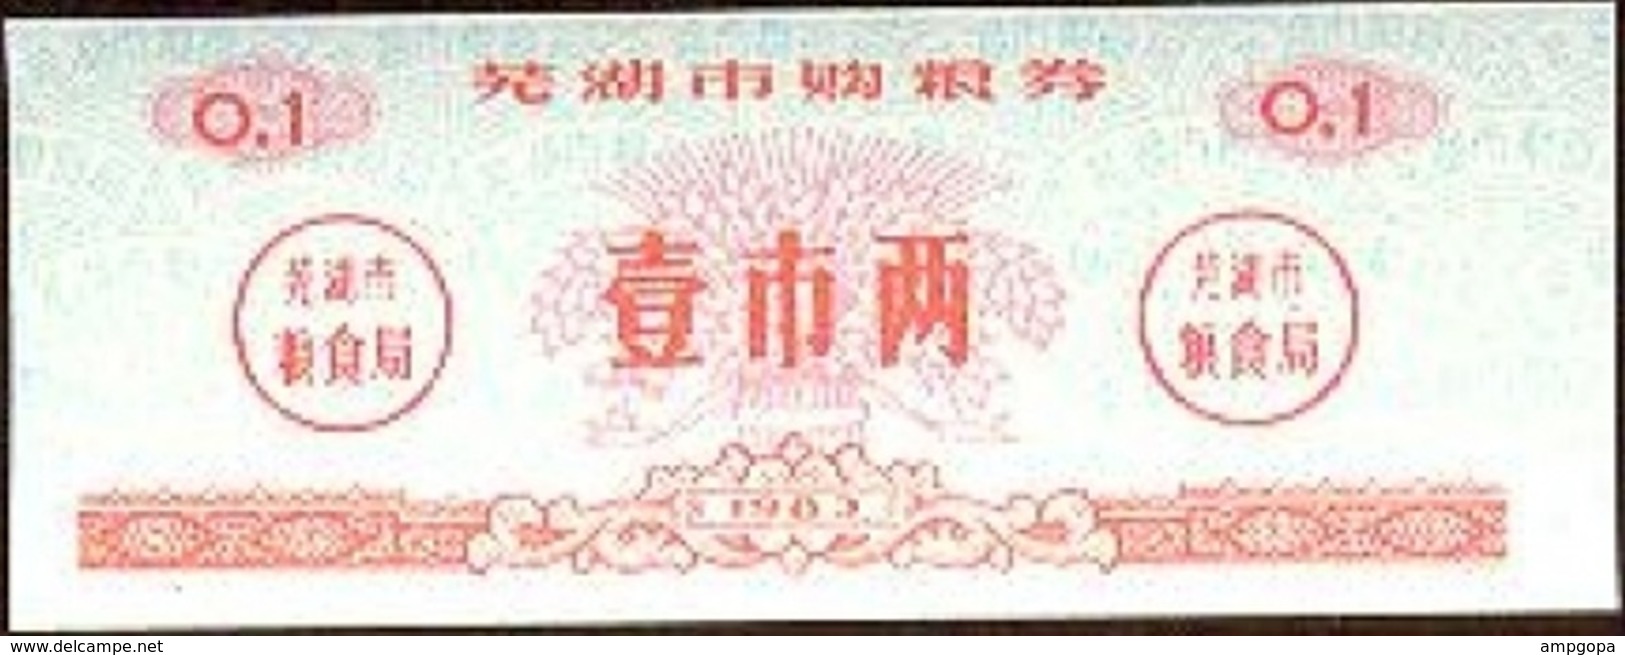 China 0.10 Jin Wuhu 1983 Ref 435-1 UNC - China